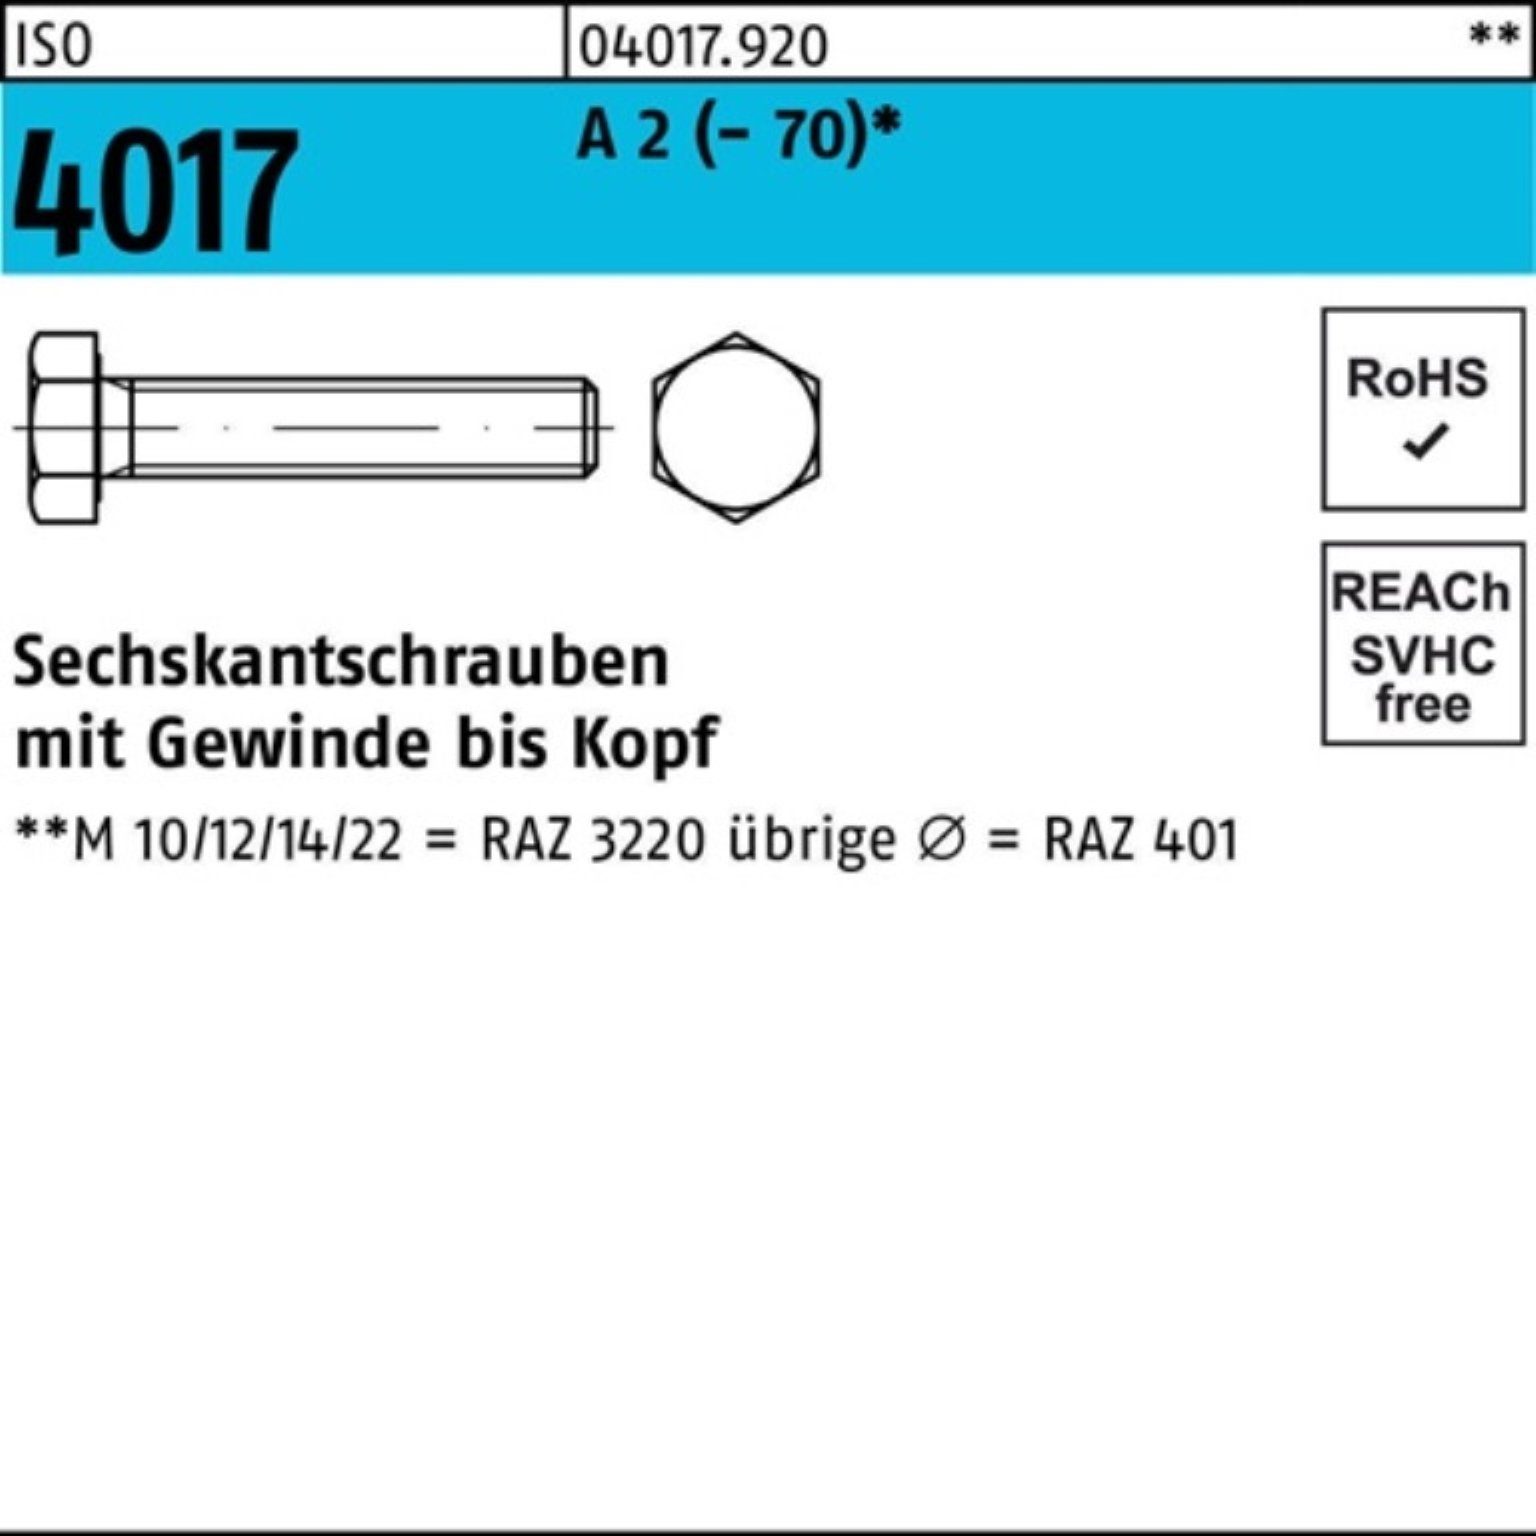 Pack Bufab A 2 VG M10x (70) 100er 180 4017 Stück 1 Sechskantschraube ISO Sechskantschraube